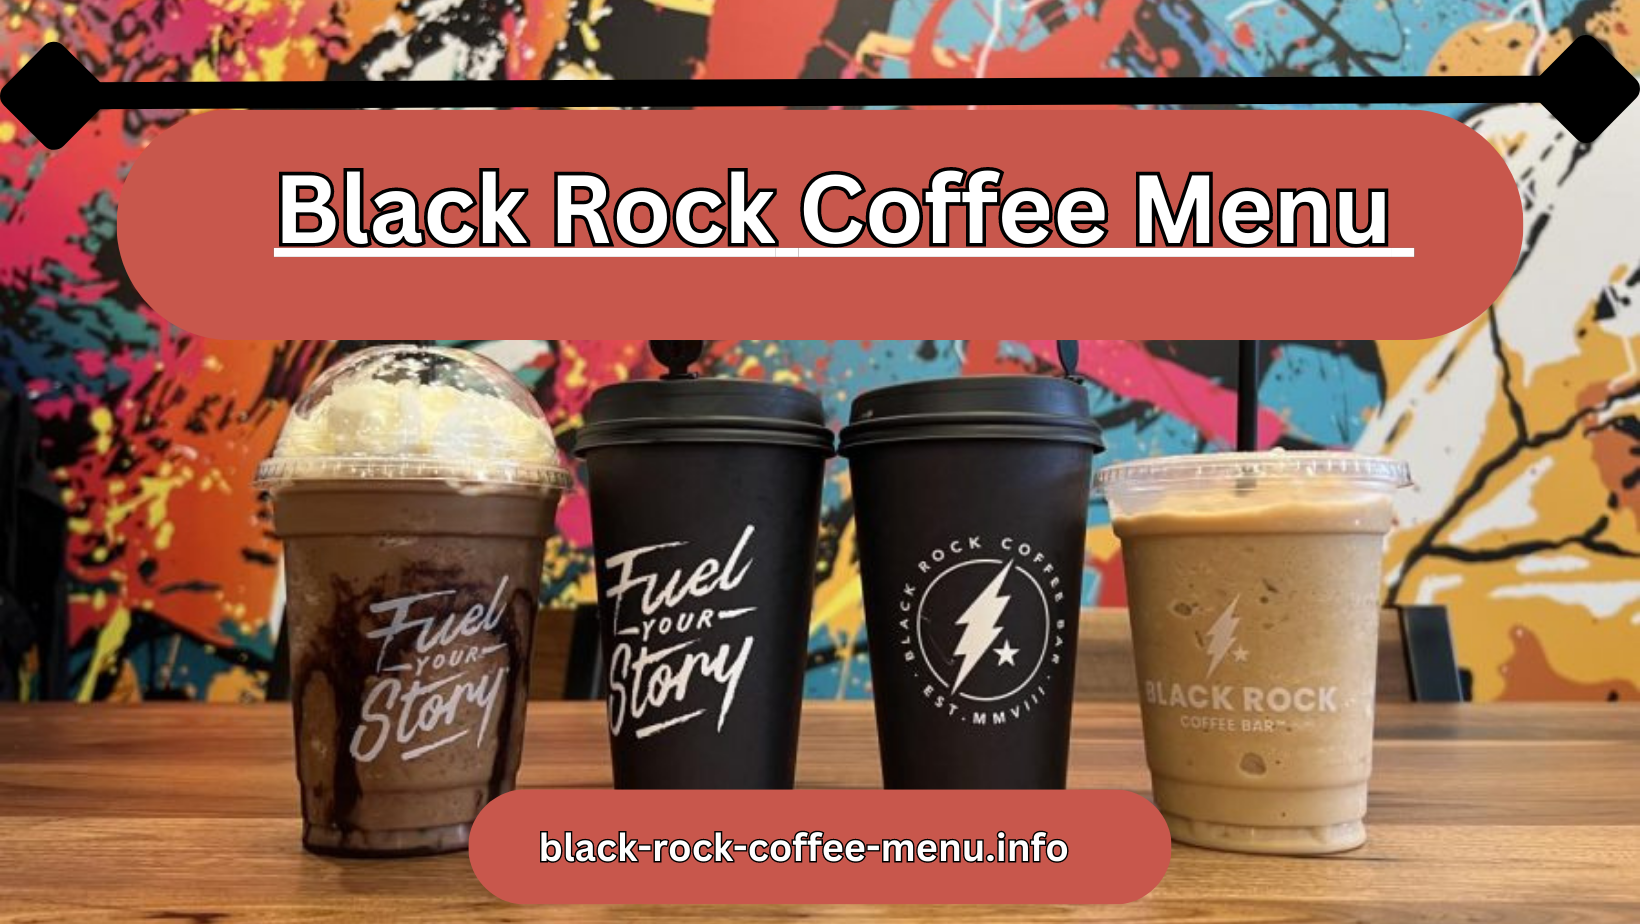 Black Rock Coffee Bar - Black Rock Coffee Menu